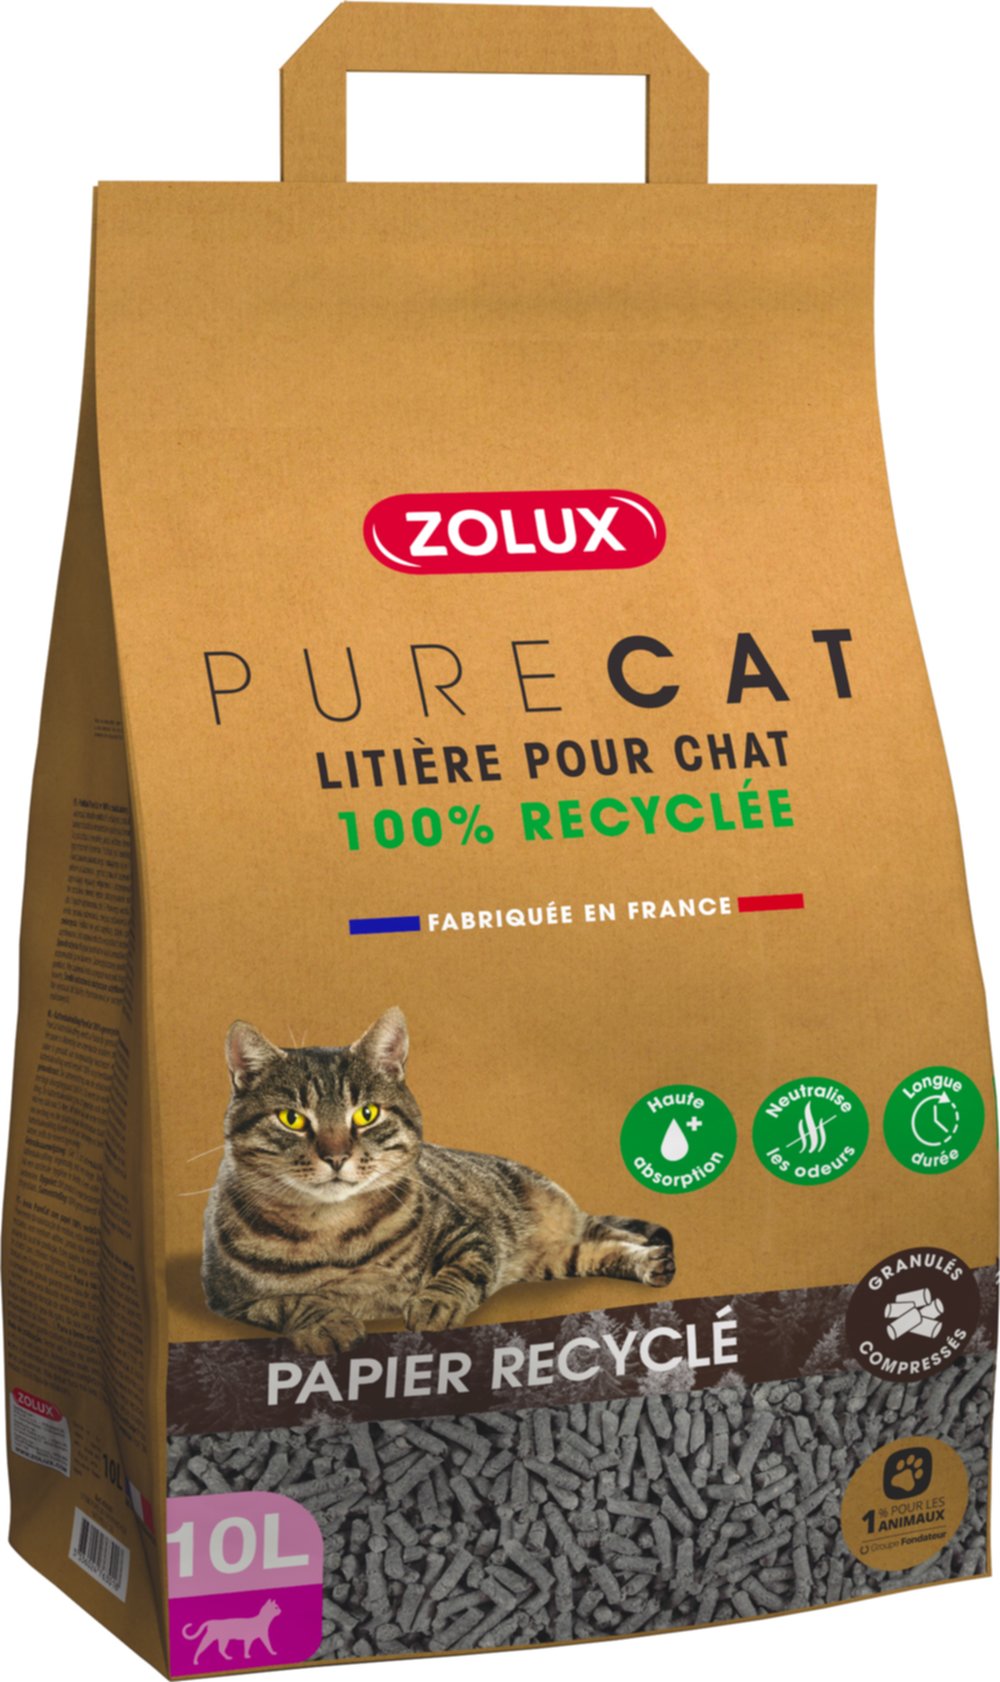 Litière Purecat papier recyclé naturel 10 L - ZOLUX